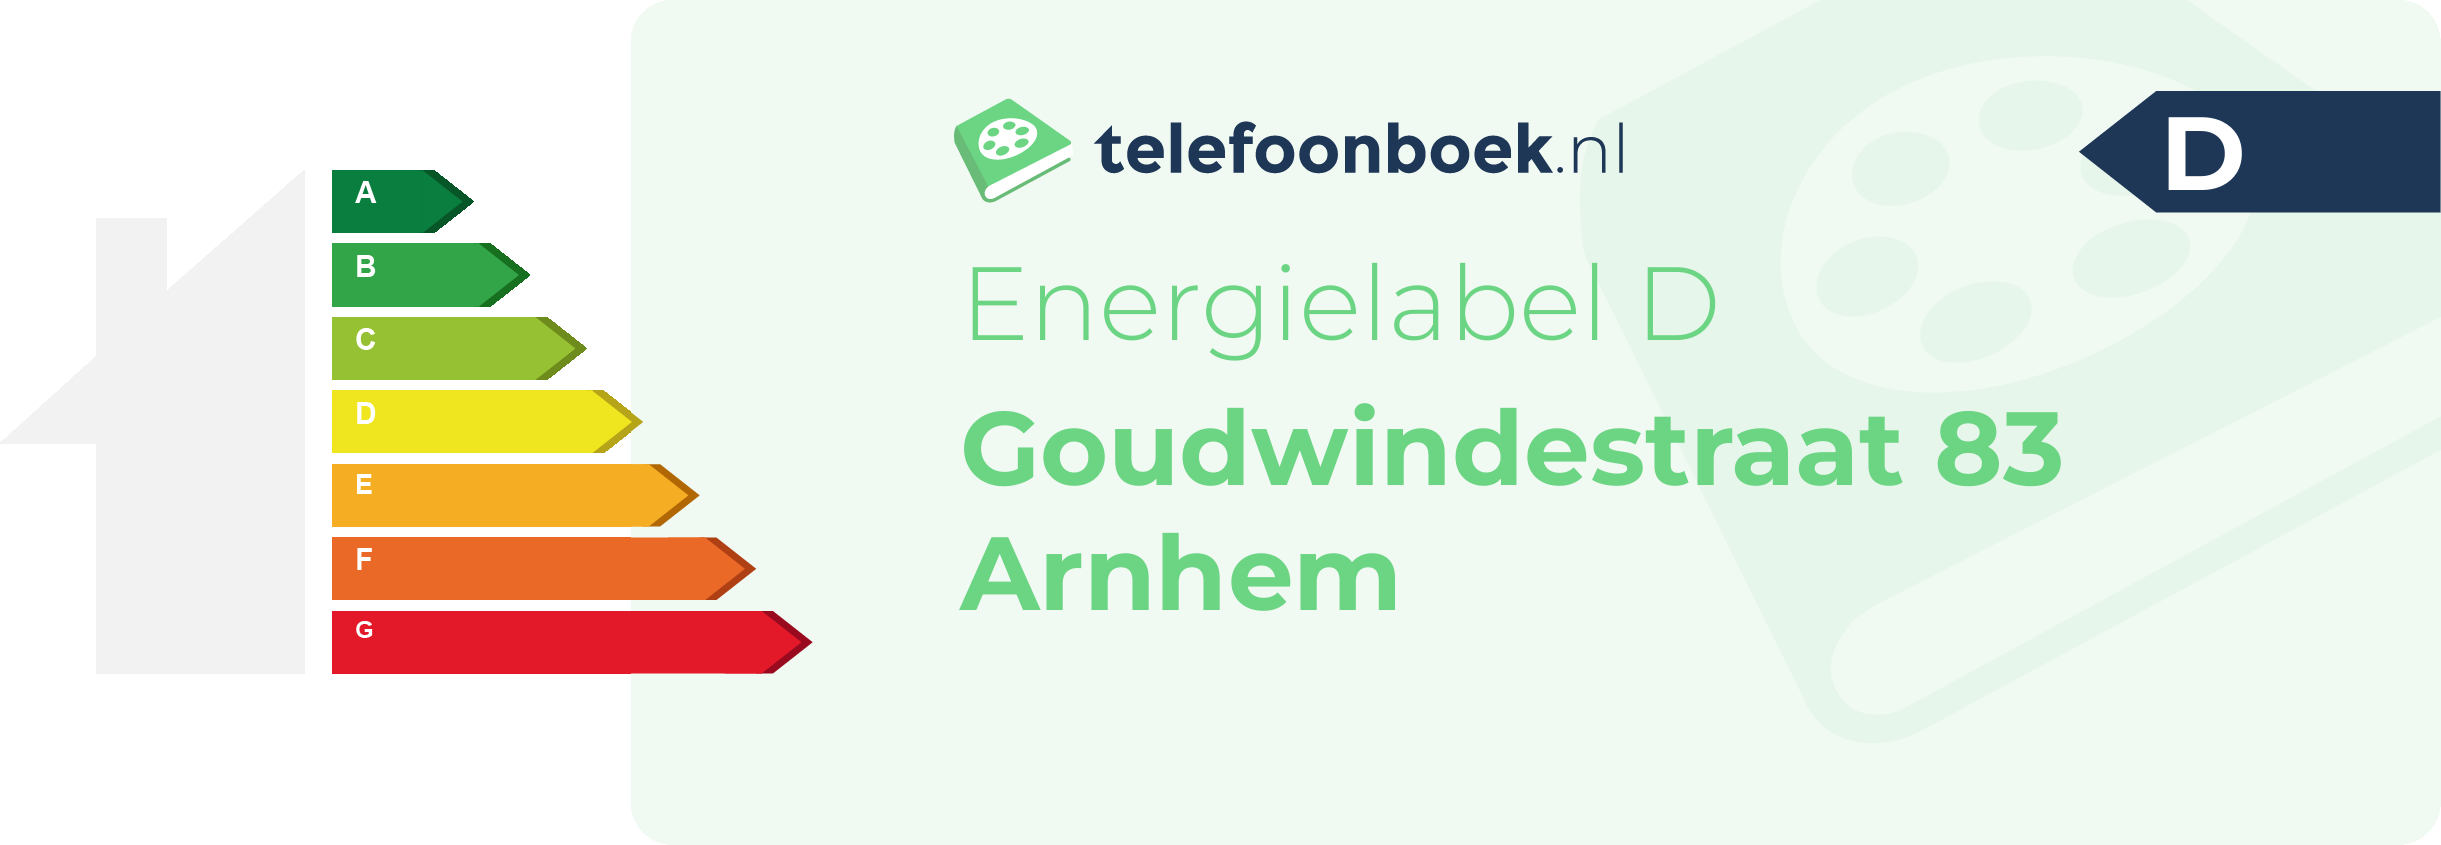 Energielabel Goudwindestraat 83 Arnhem